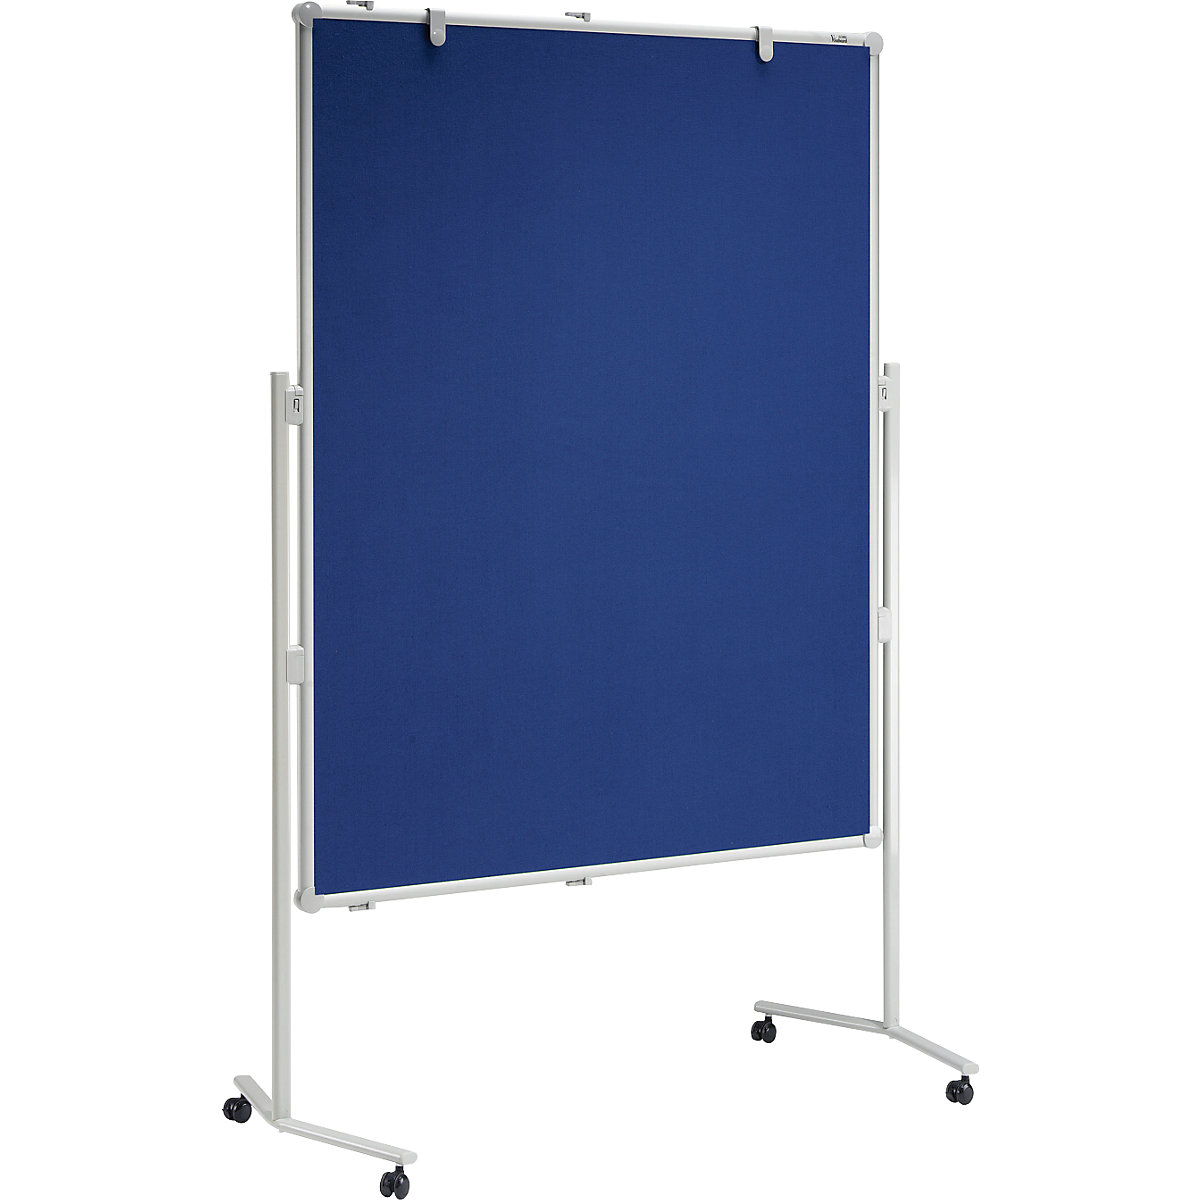 MAUL Moderationstafel MAULpro, Textil-Oberfläche, blau, BxH 1200 x 1500 mm